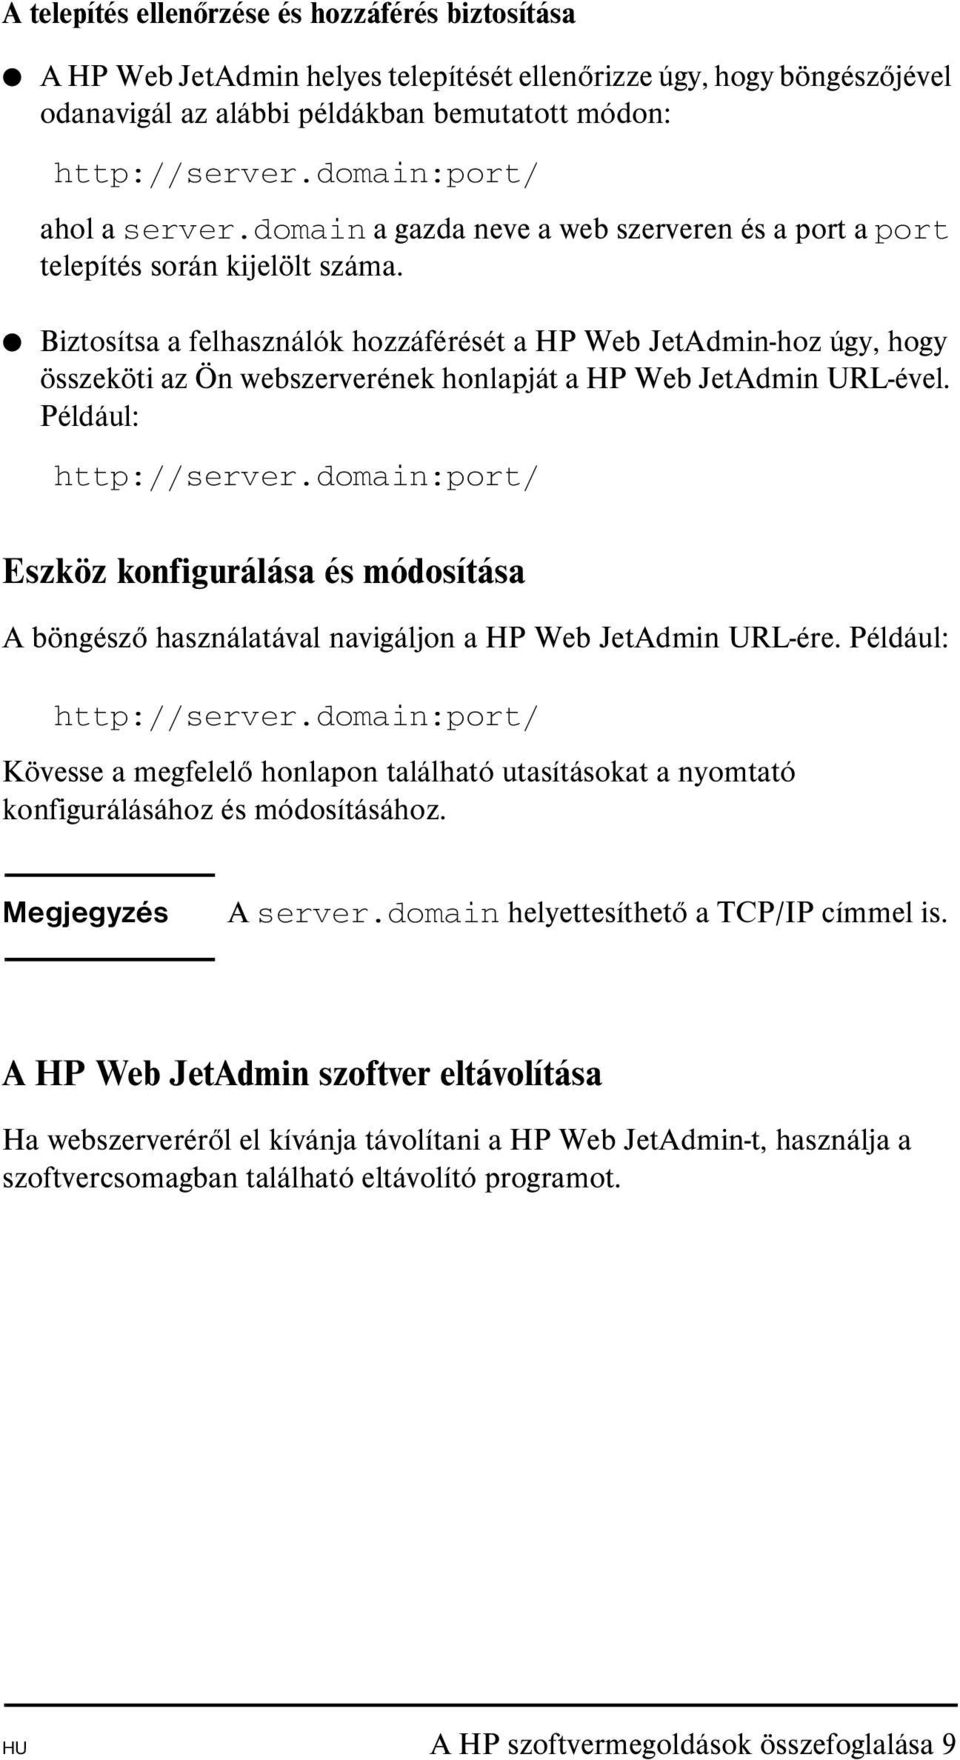 Biztosítsa a felhasználók hozzáférését a HP Web JetAdmin-hoz úgy, hogy összeköti az Ön webszerverének honlapját a HP Web JetAdmin URL-ével. Például: http://server.